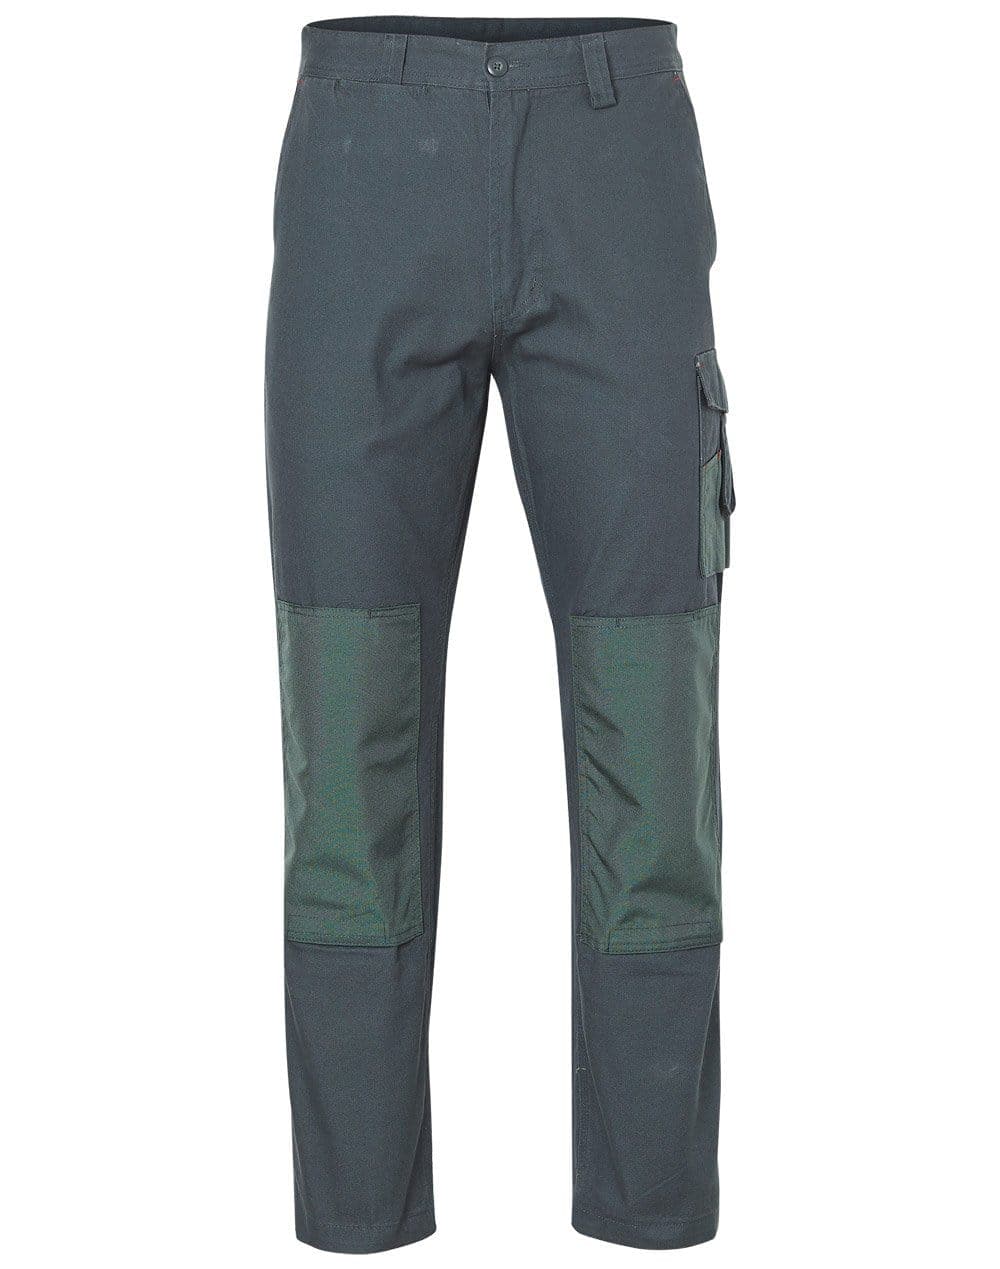 Uneek Super Pro Trousers Premium Heavy Knee Pad Pockets Safety Work Wear  Pants | eBay